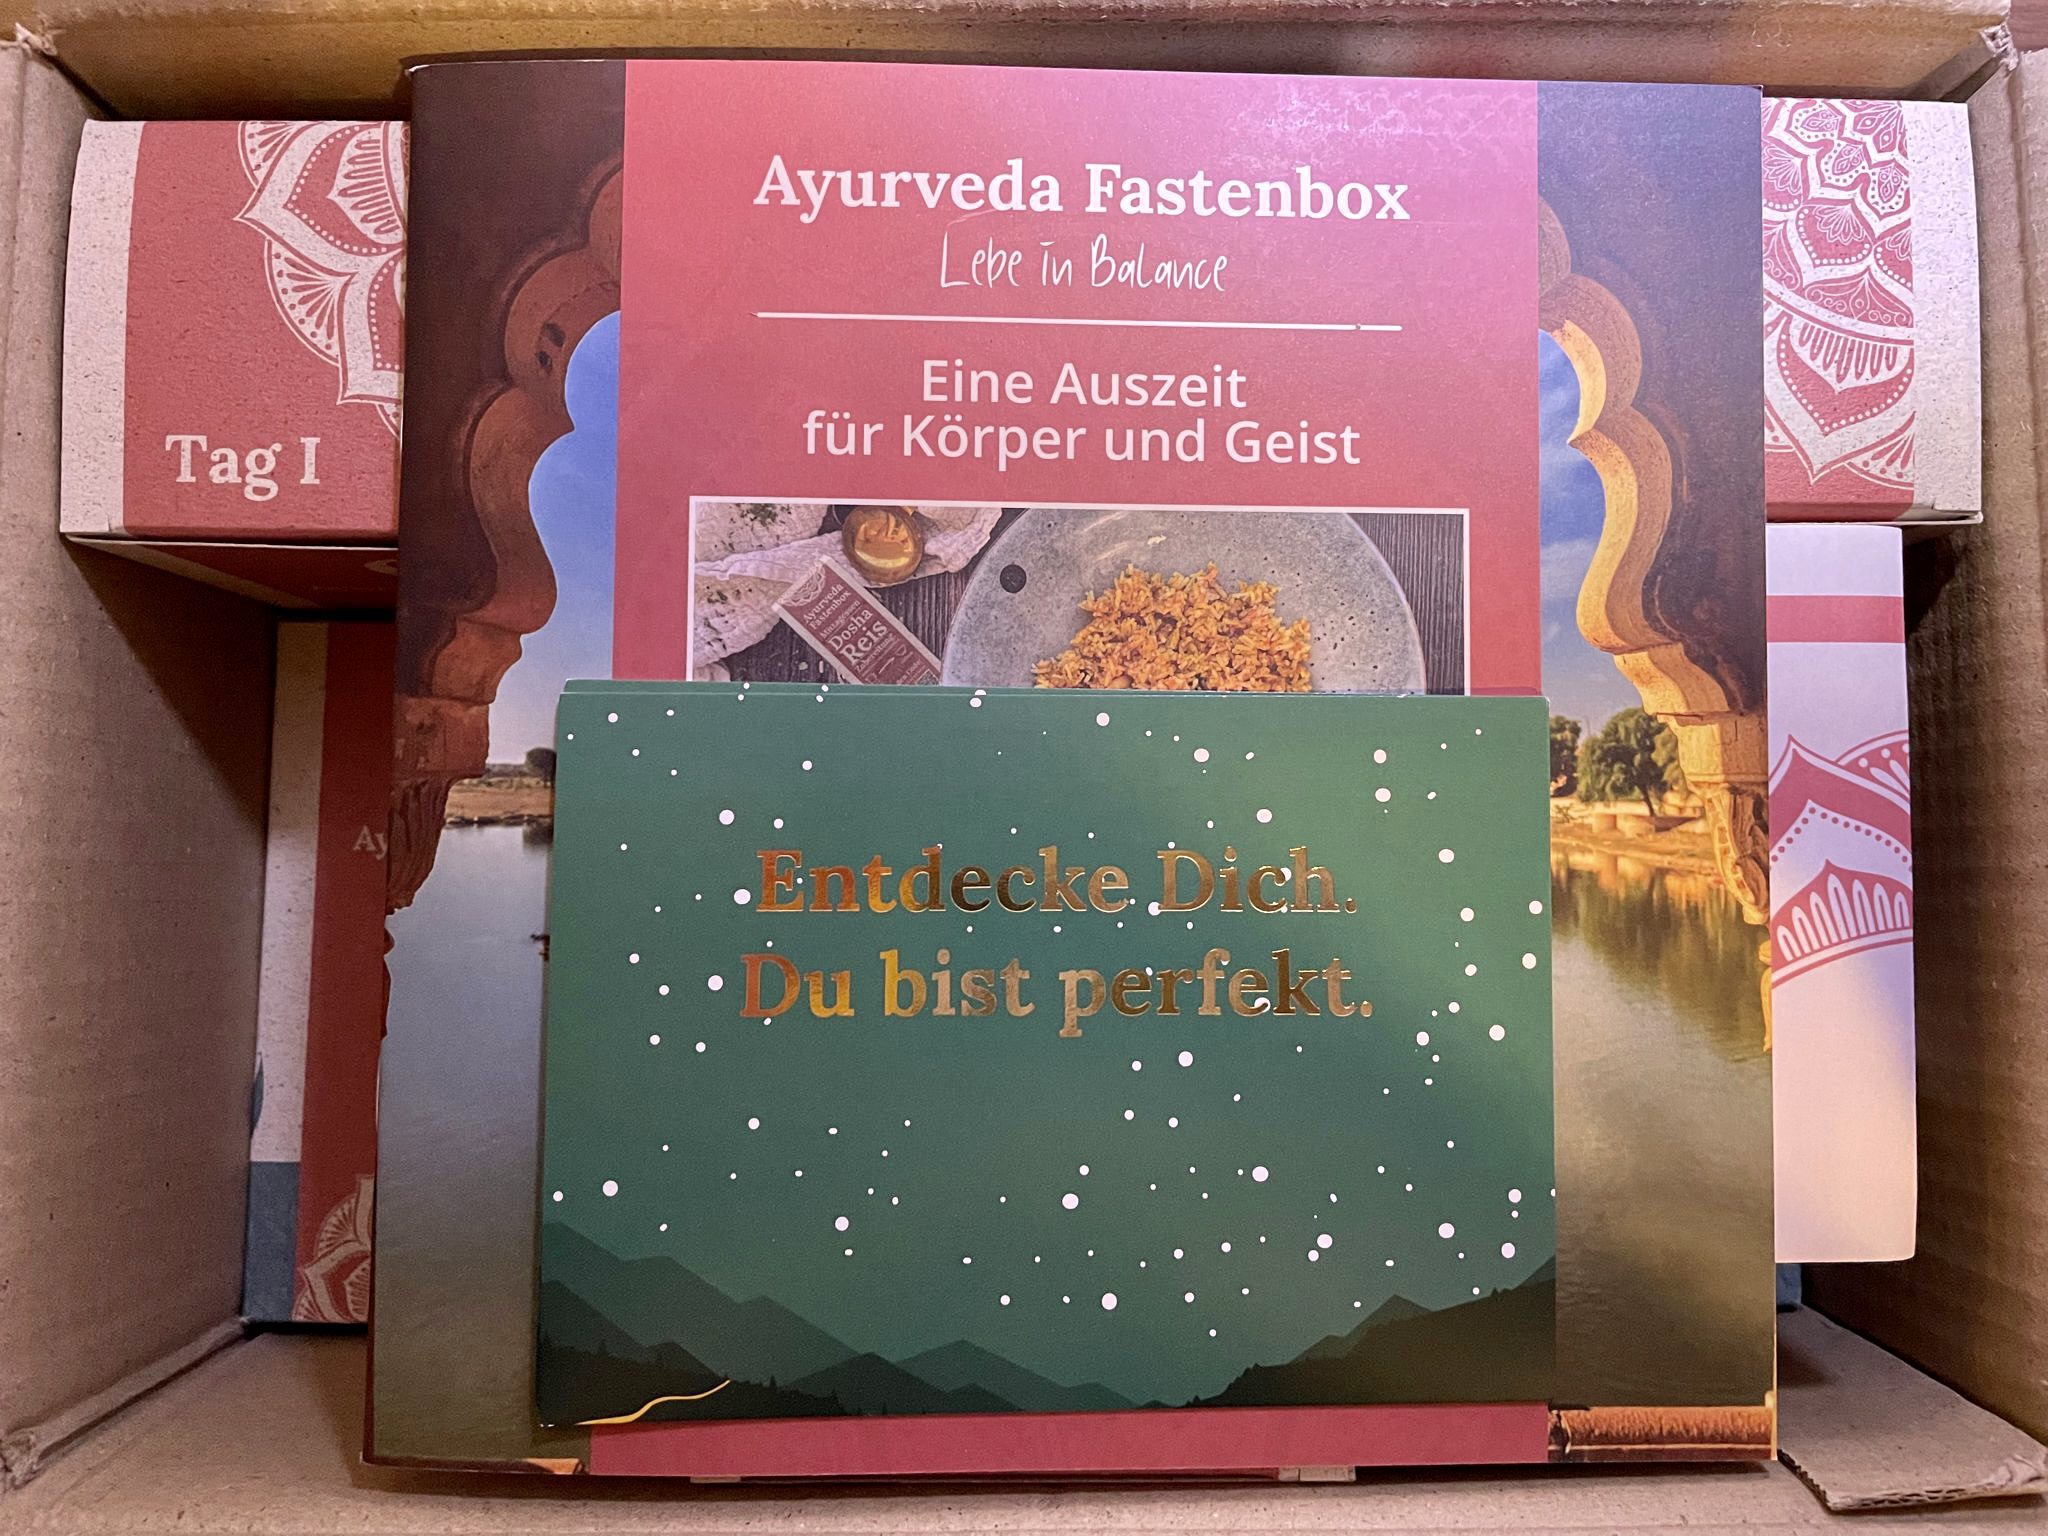 So ist die Salufast Fastenbox in der Ayurveda-Variante gepackt | Foto: Martina Gadiot